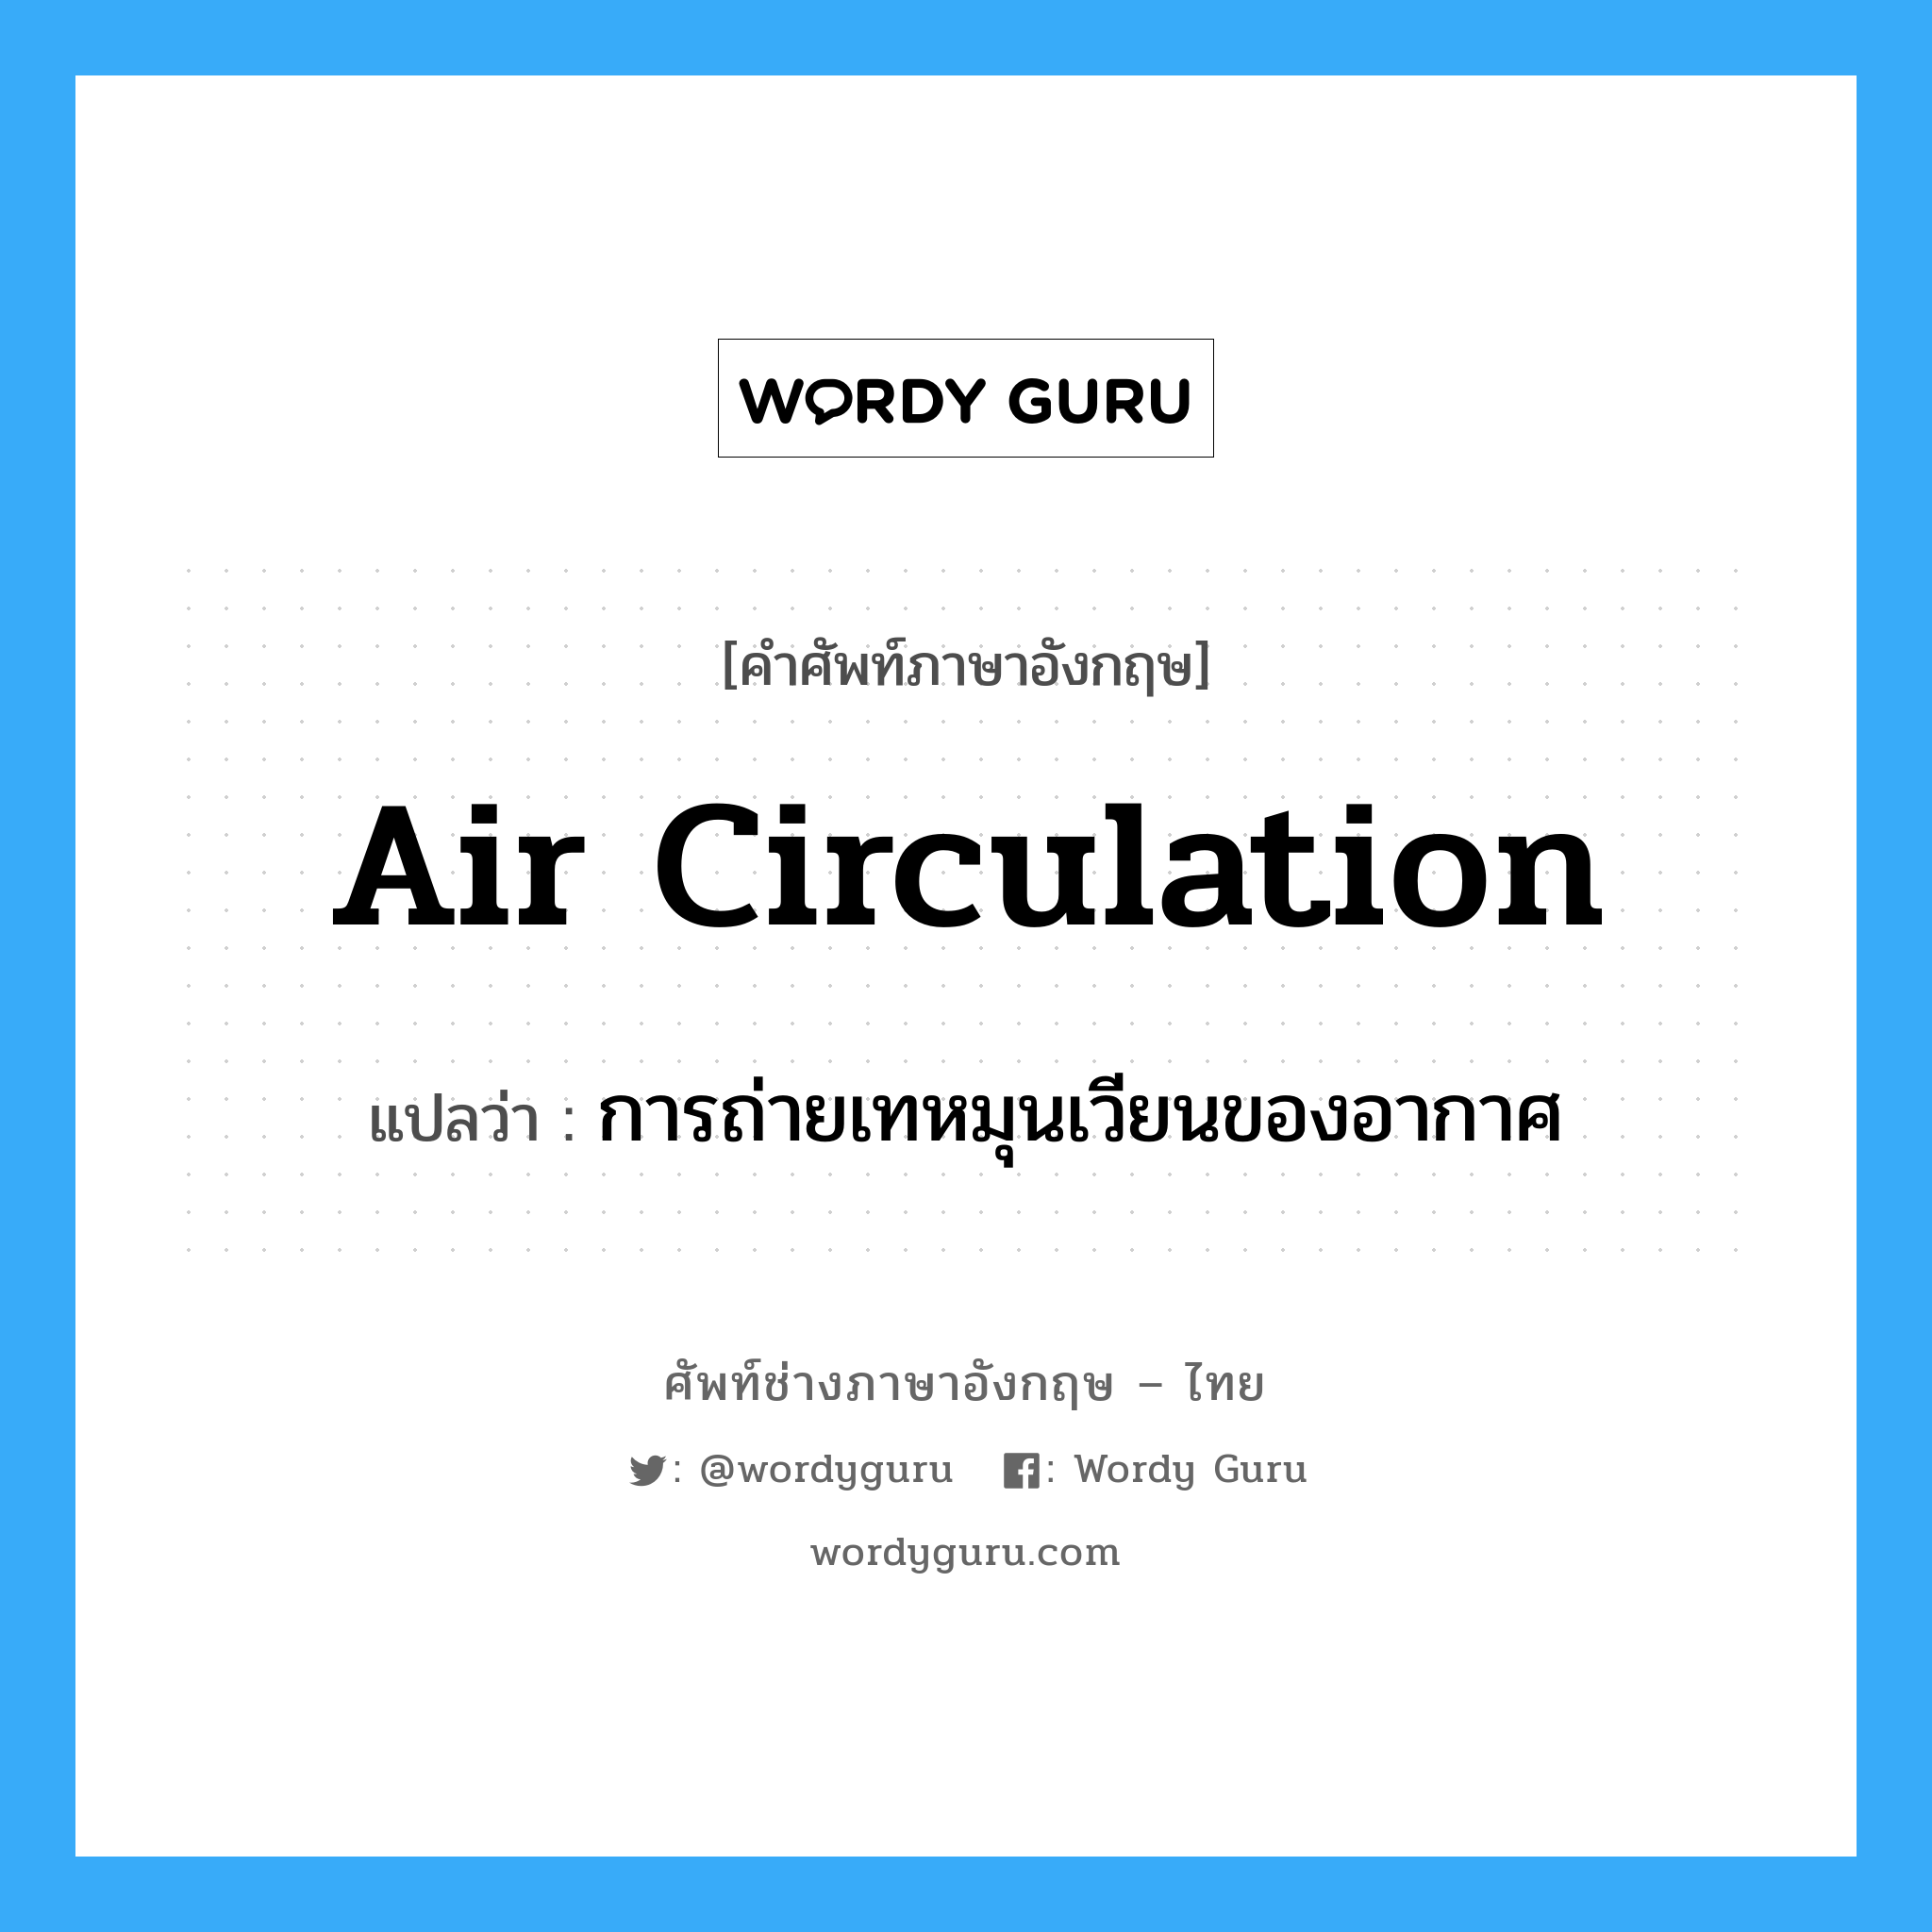 air circulation แปลว่า?, คำศัพท์ช่างภาษาอังกฤษ - ไทย air circulation คำศัพท์ภาษาอังกฤษ air circulation แปลว่า การถ่ายเทหมุนเวียนของอากาศ